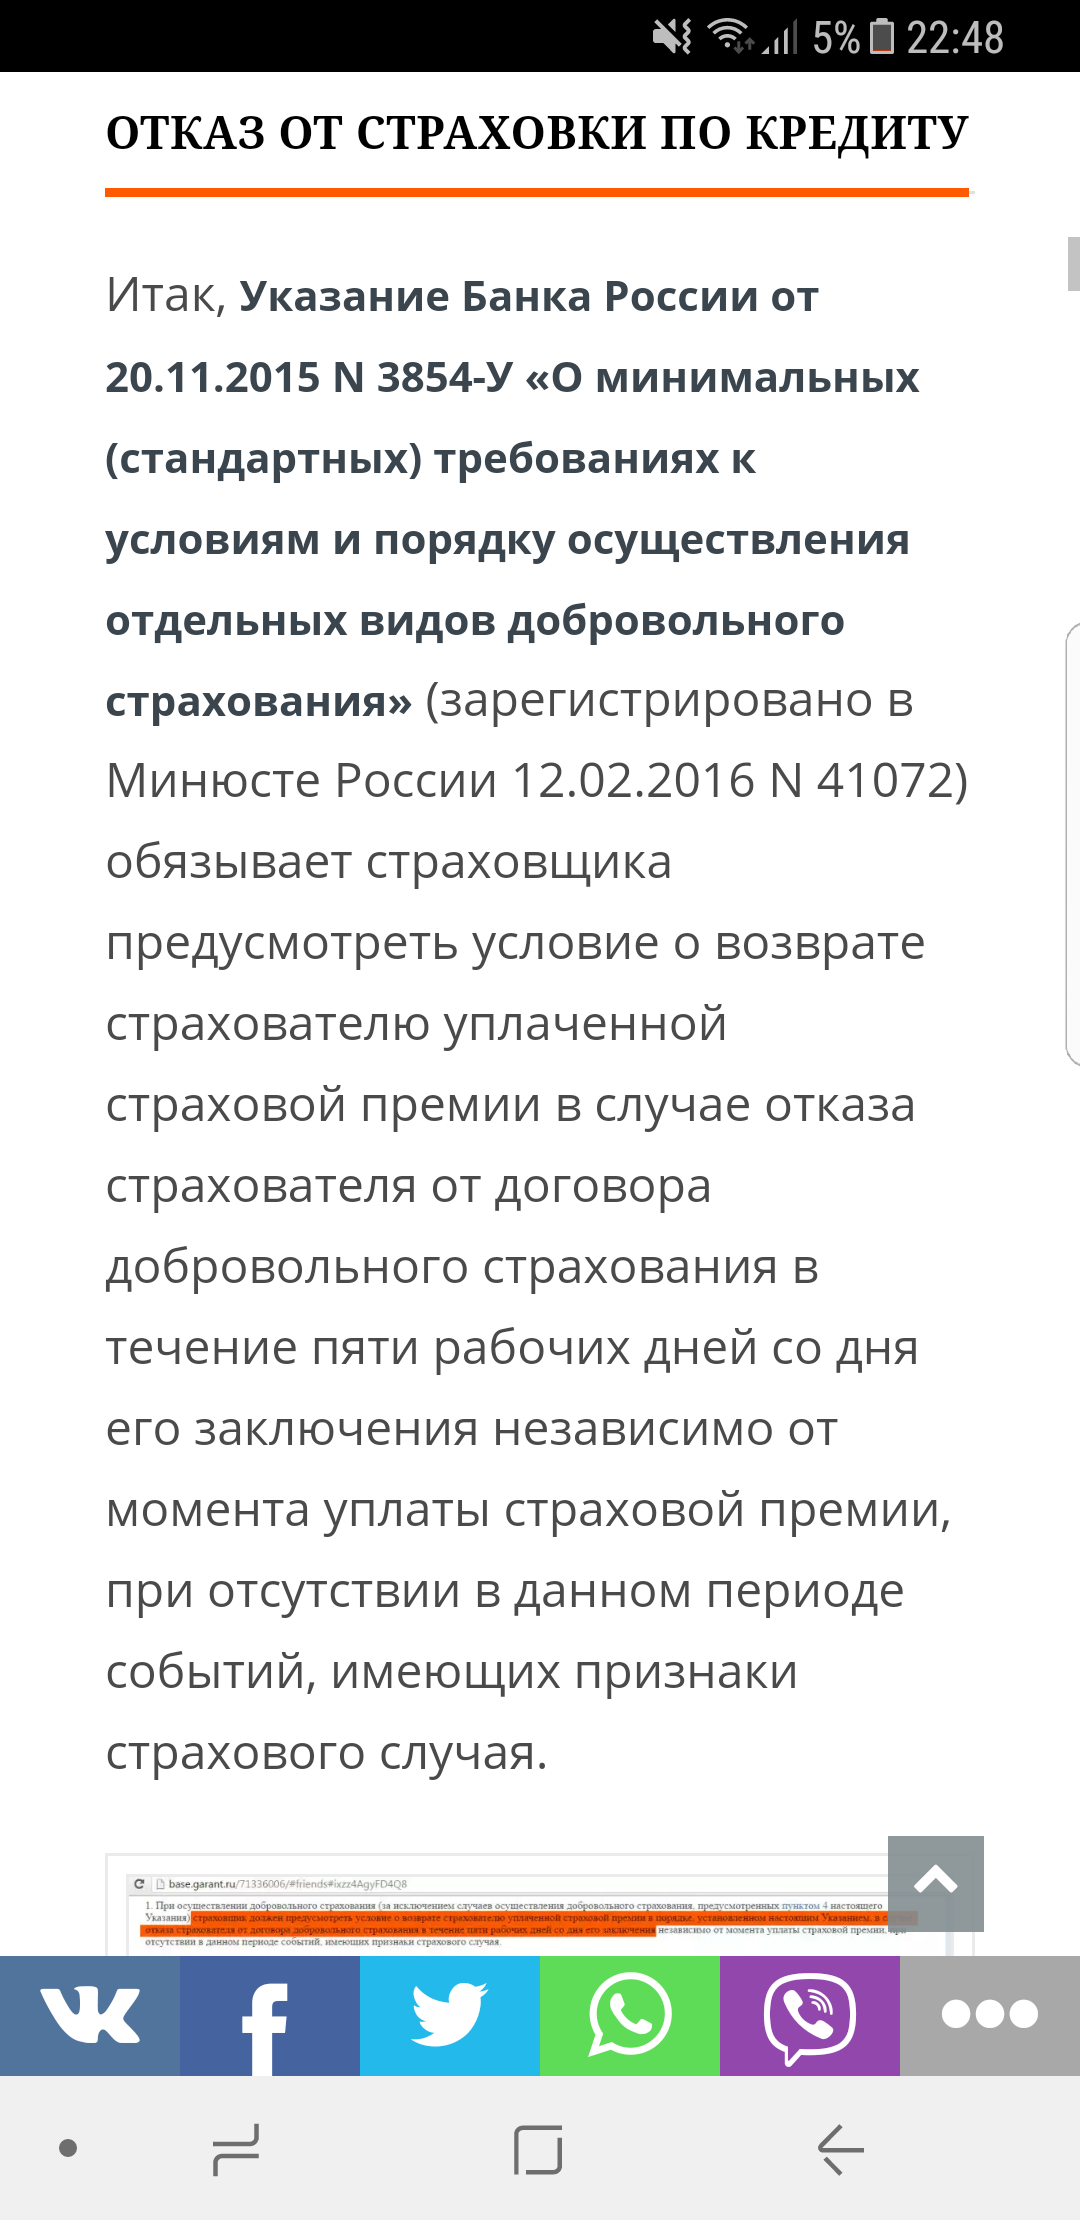 Саяногорск Инфо - screenshot_20170622-224806.png, Скачано: 471